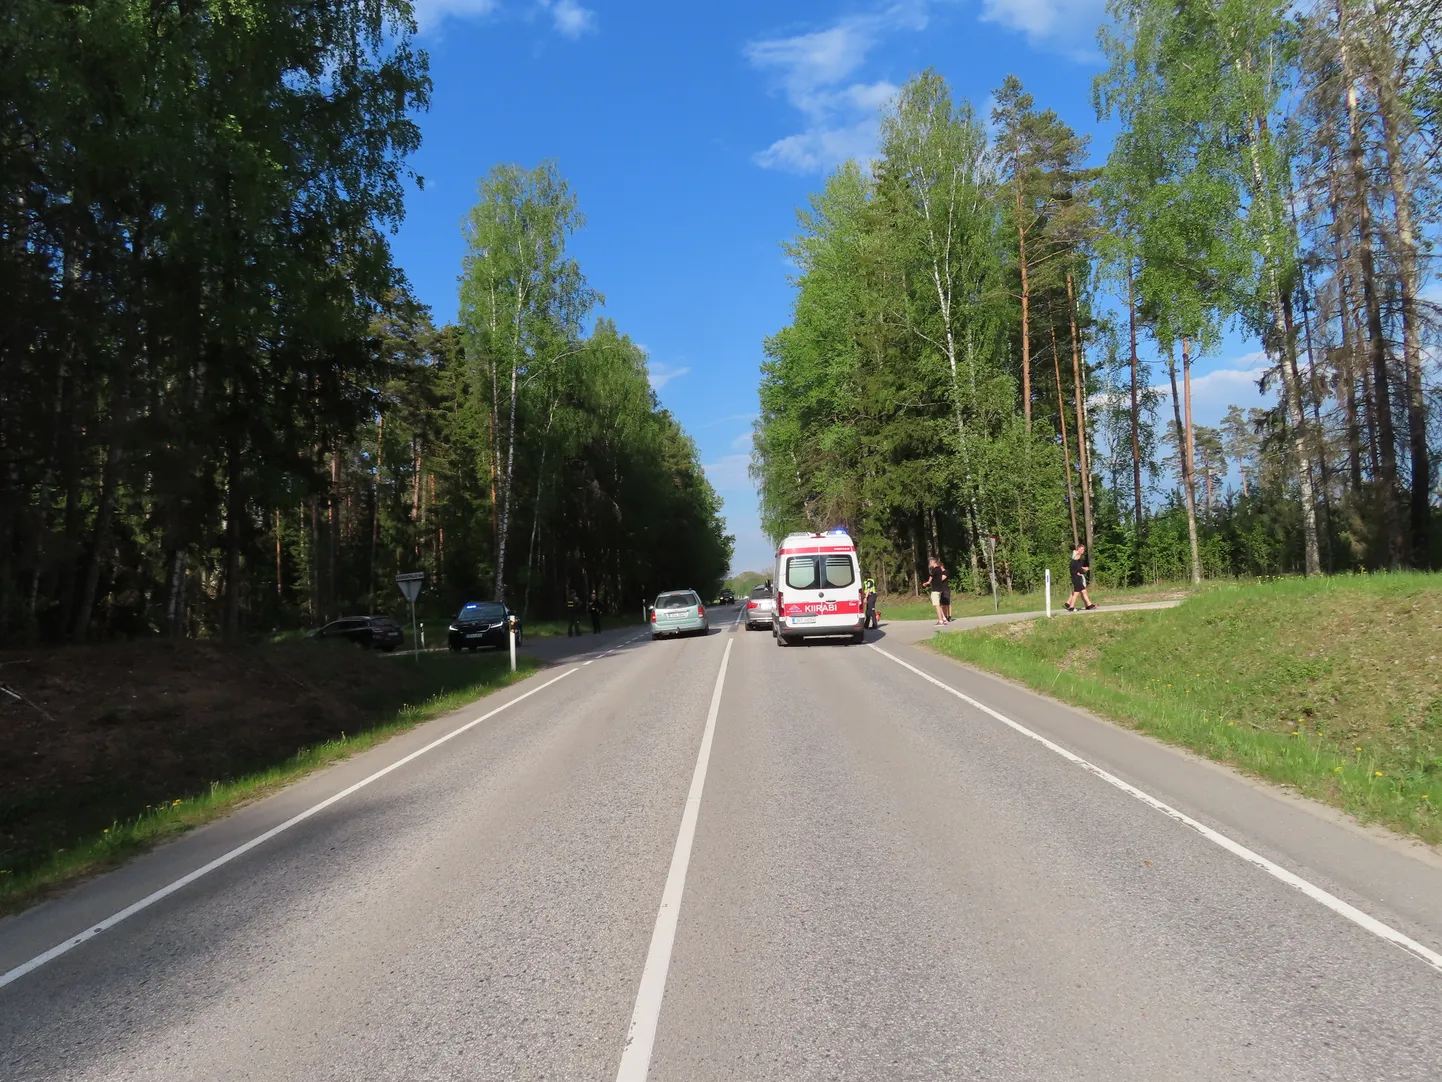 Liiklusõnnetus juhtus Põlva–Saverna tee 7. kilomeetril.